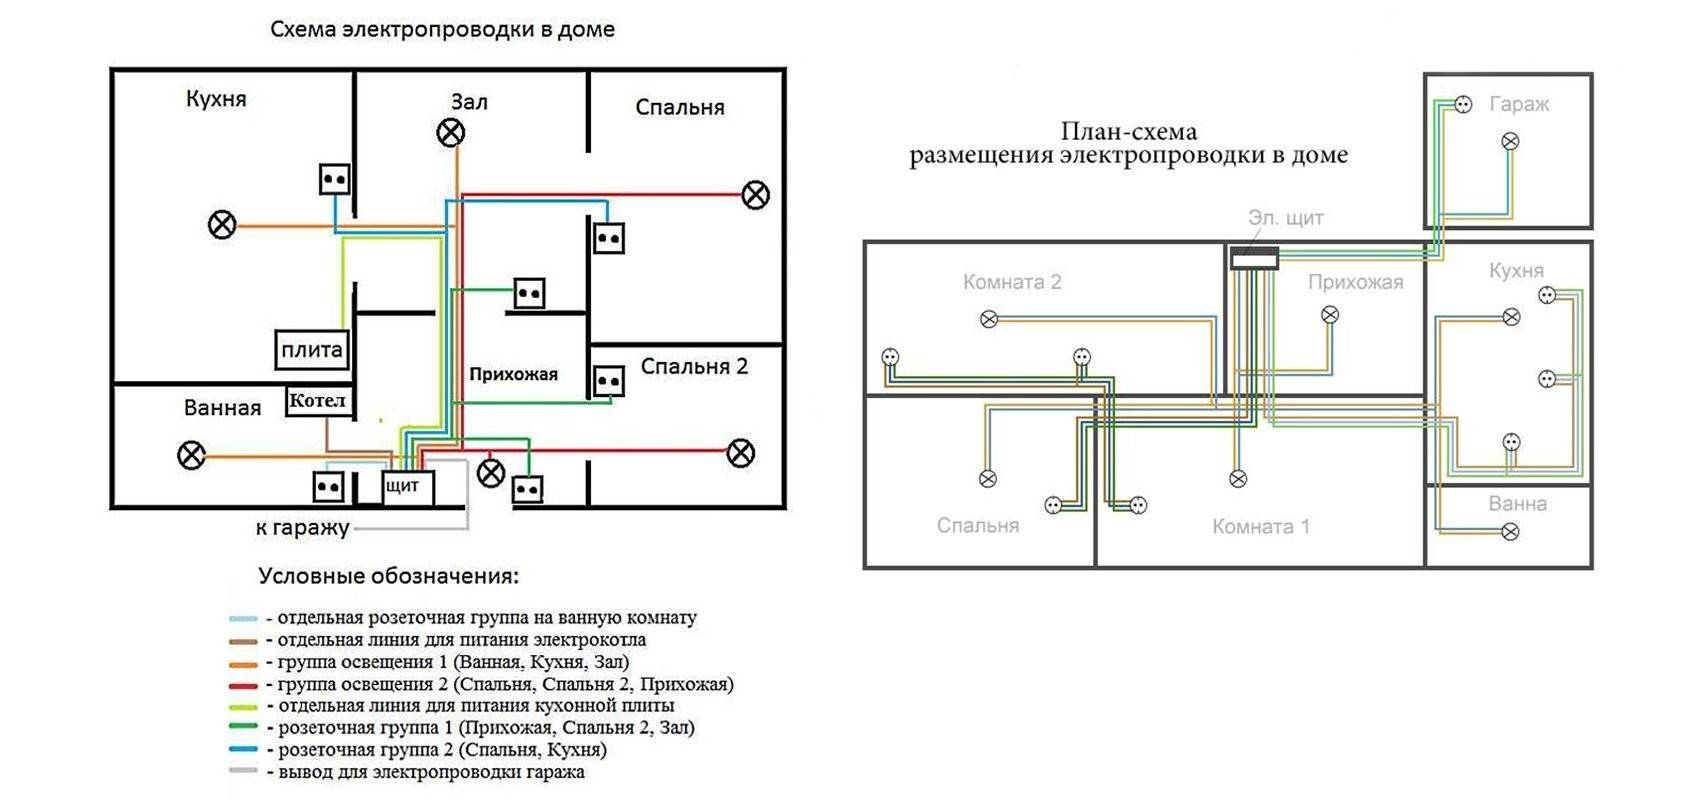 Пуэ-7 п.2.1.52-2.1.65 открытые электропроводки внутри помещений